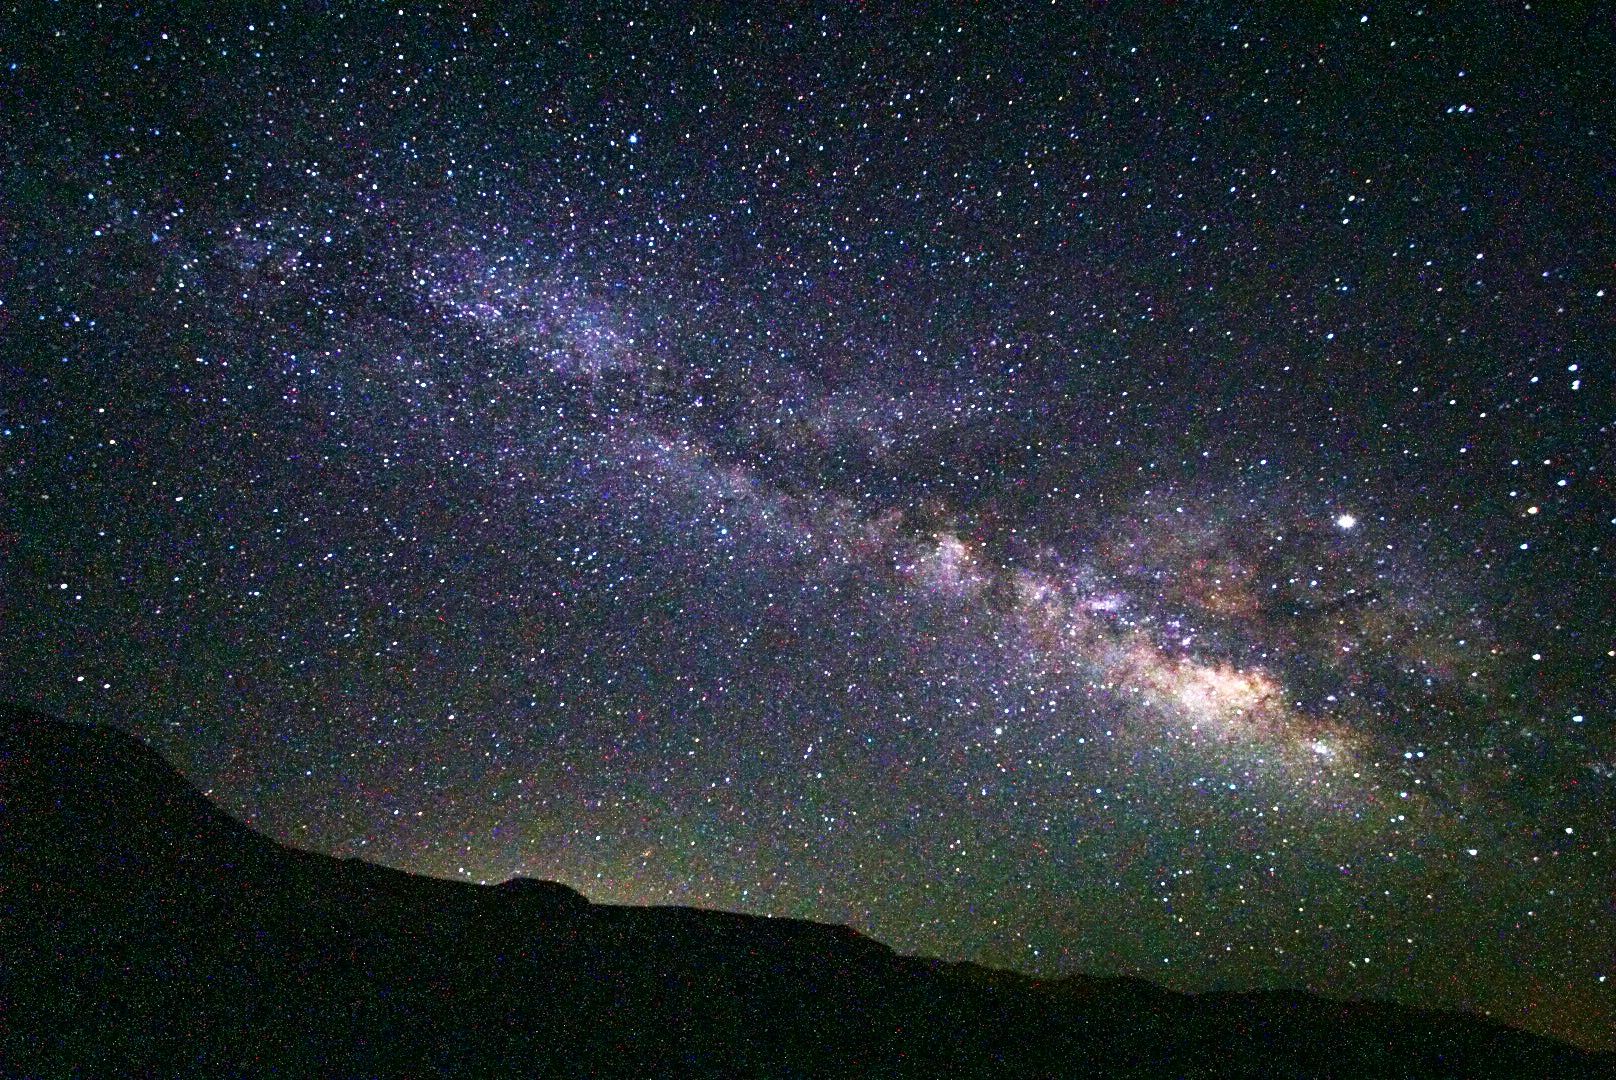 死亡谷是第2次来。这次住到了炎热的谷底，拍到了最漂亮的星空。死亡谷是全世界有名的暗夜地。